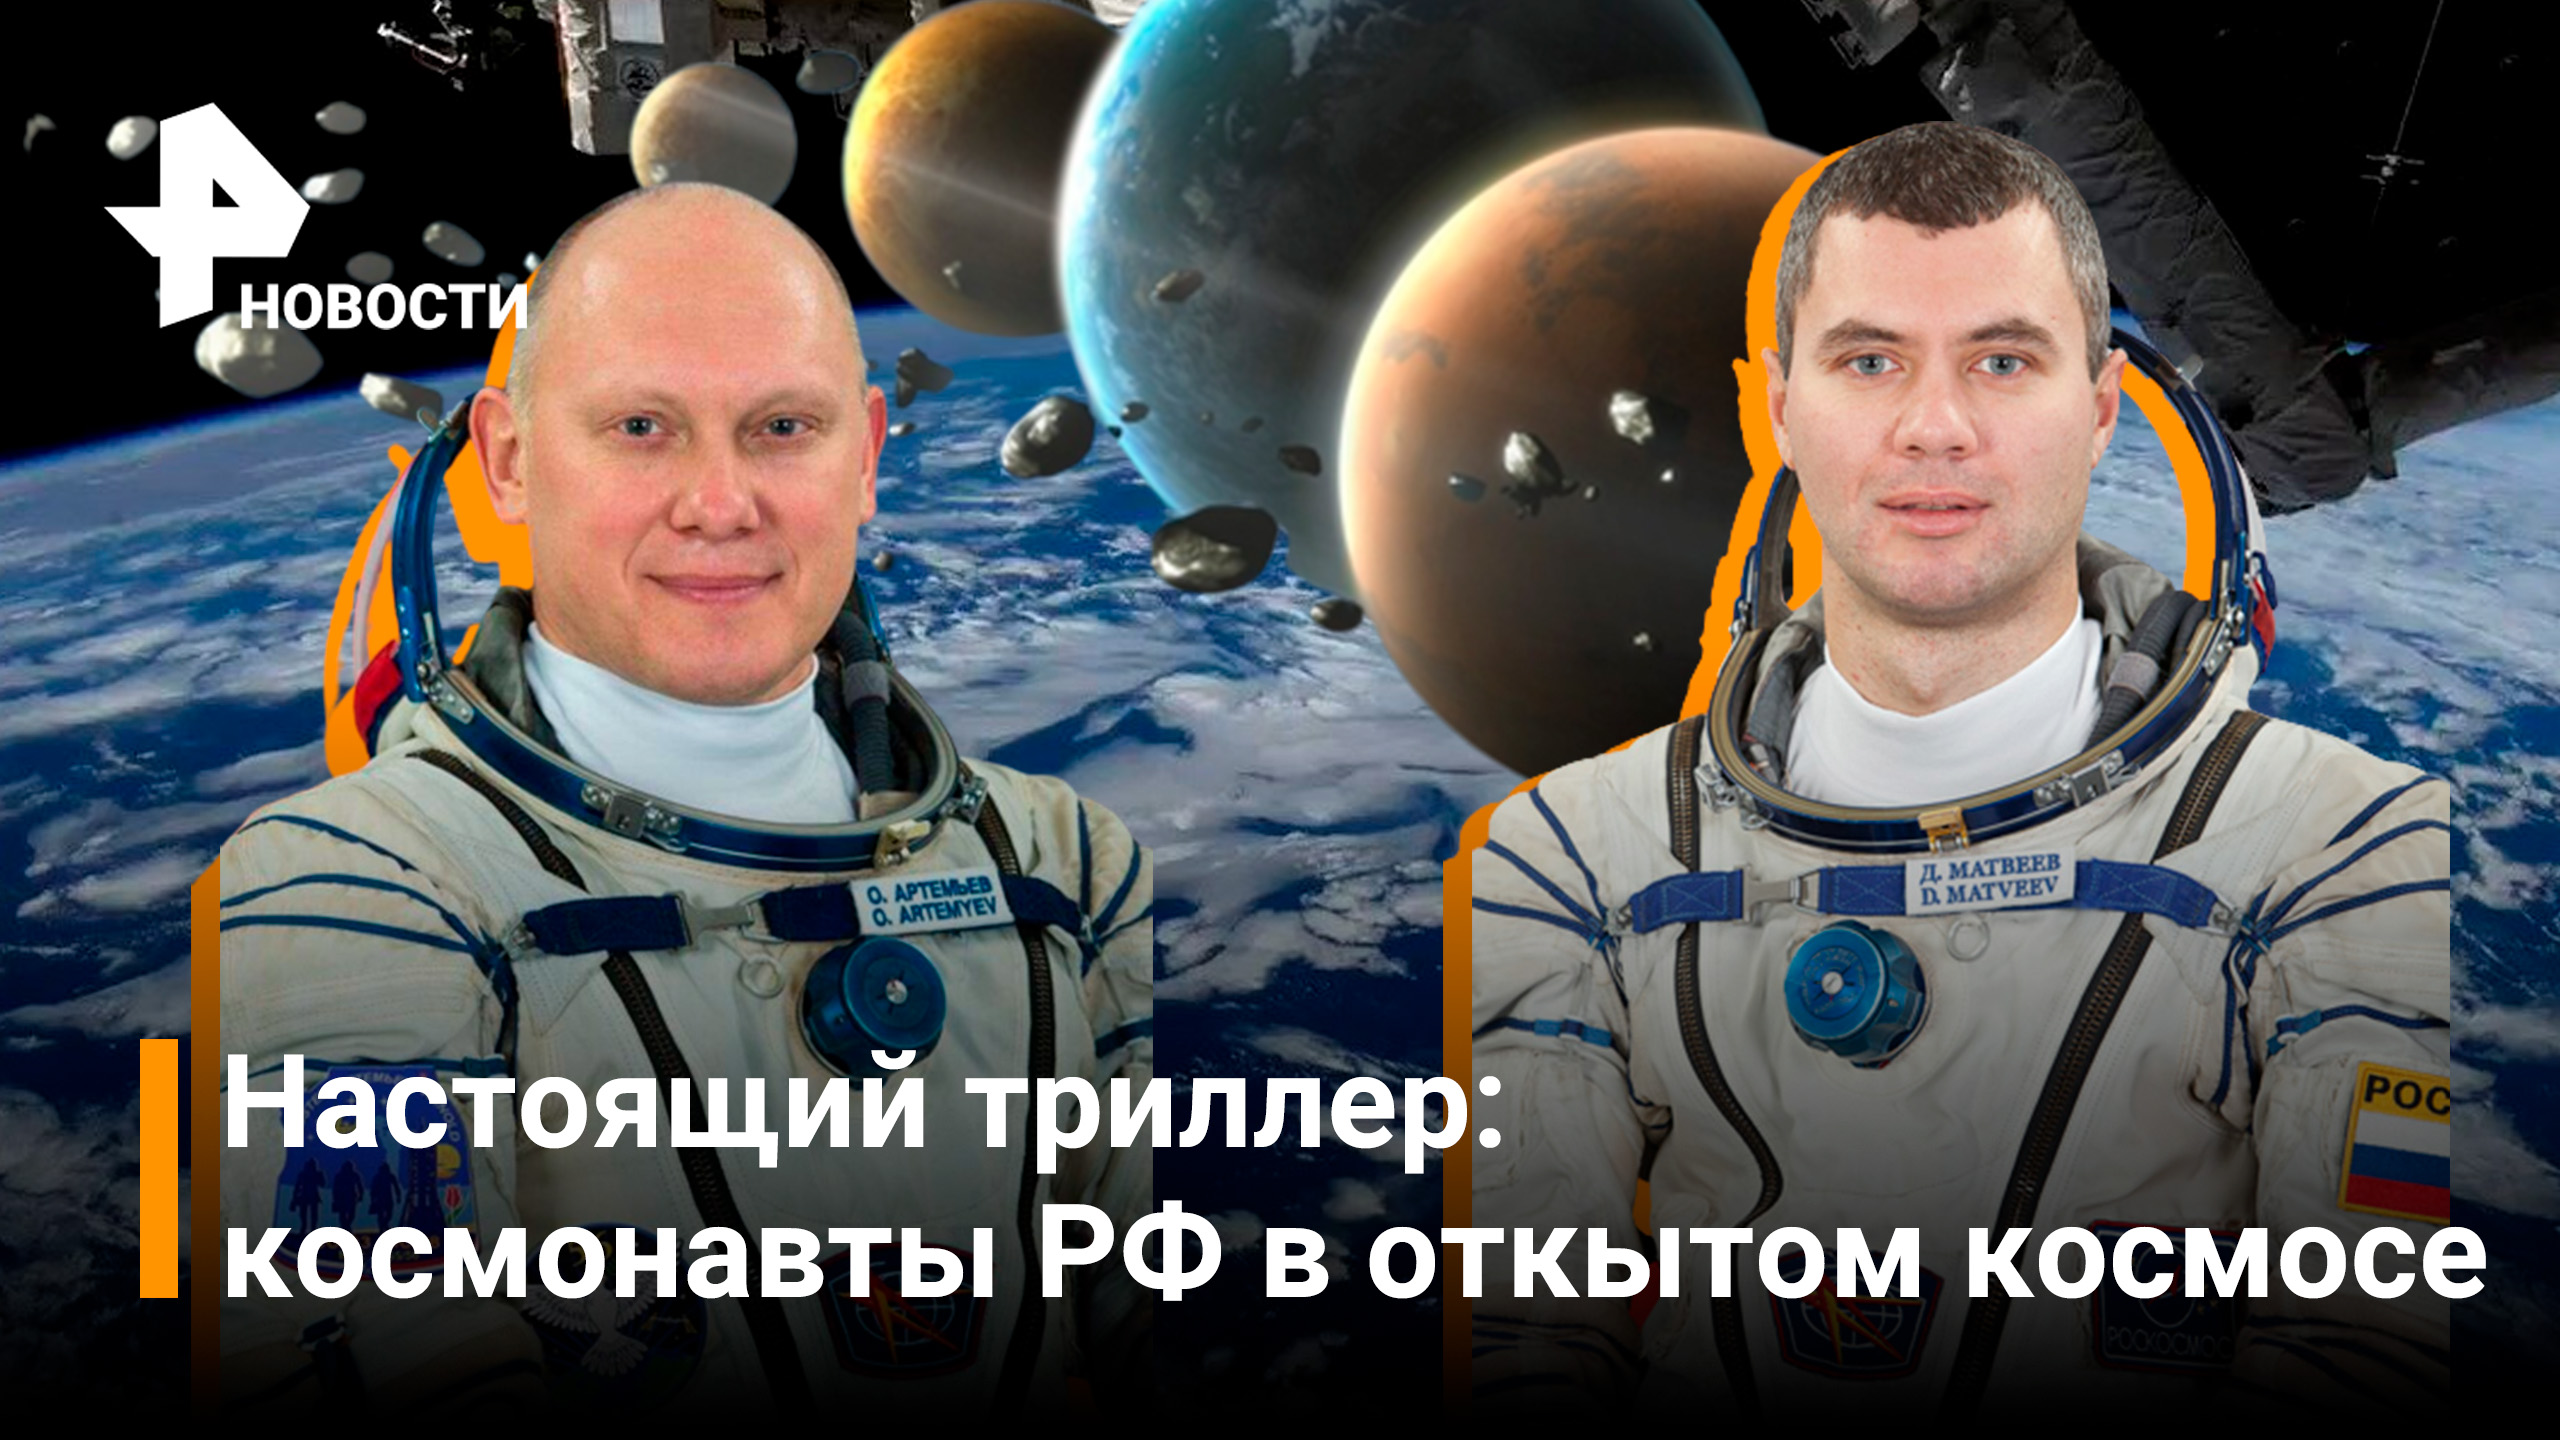 Россияне Артемьев и Матвеев вышли в открытый космос с борта МКС / Новости РЕН